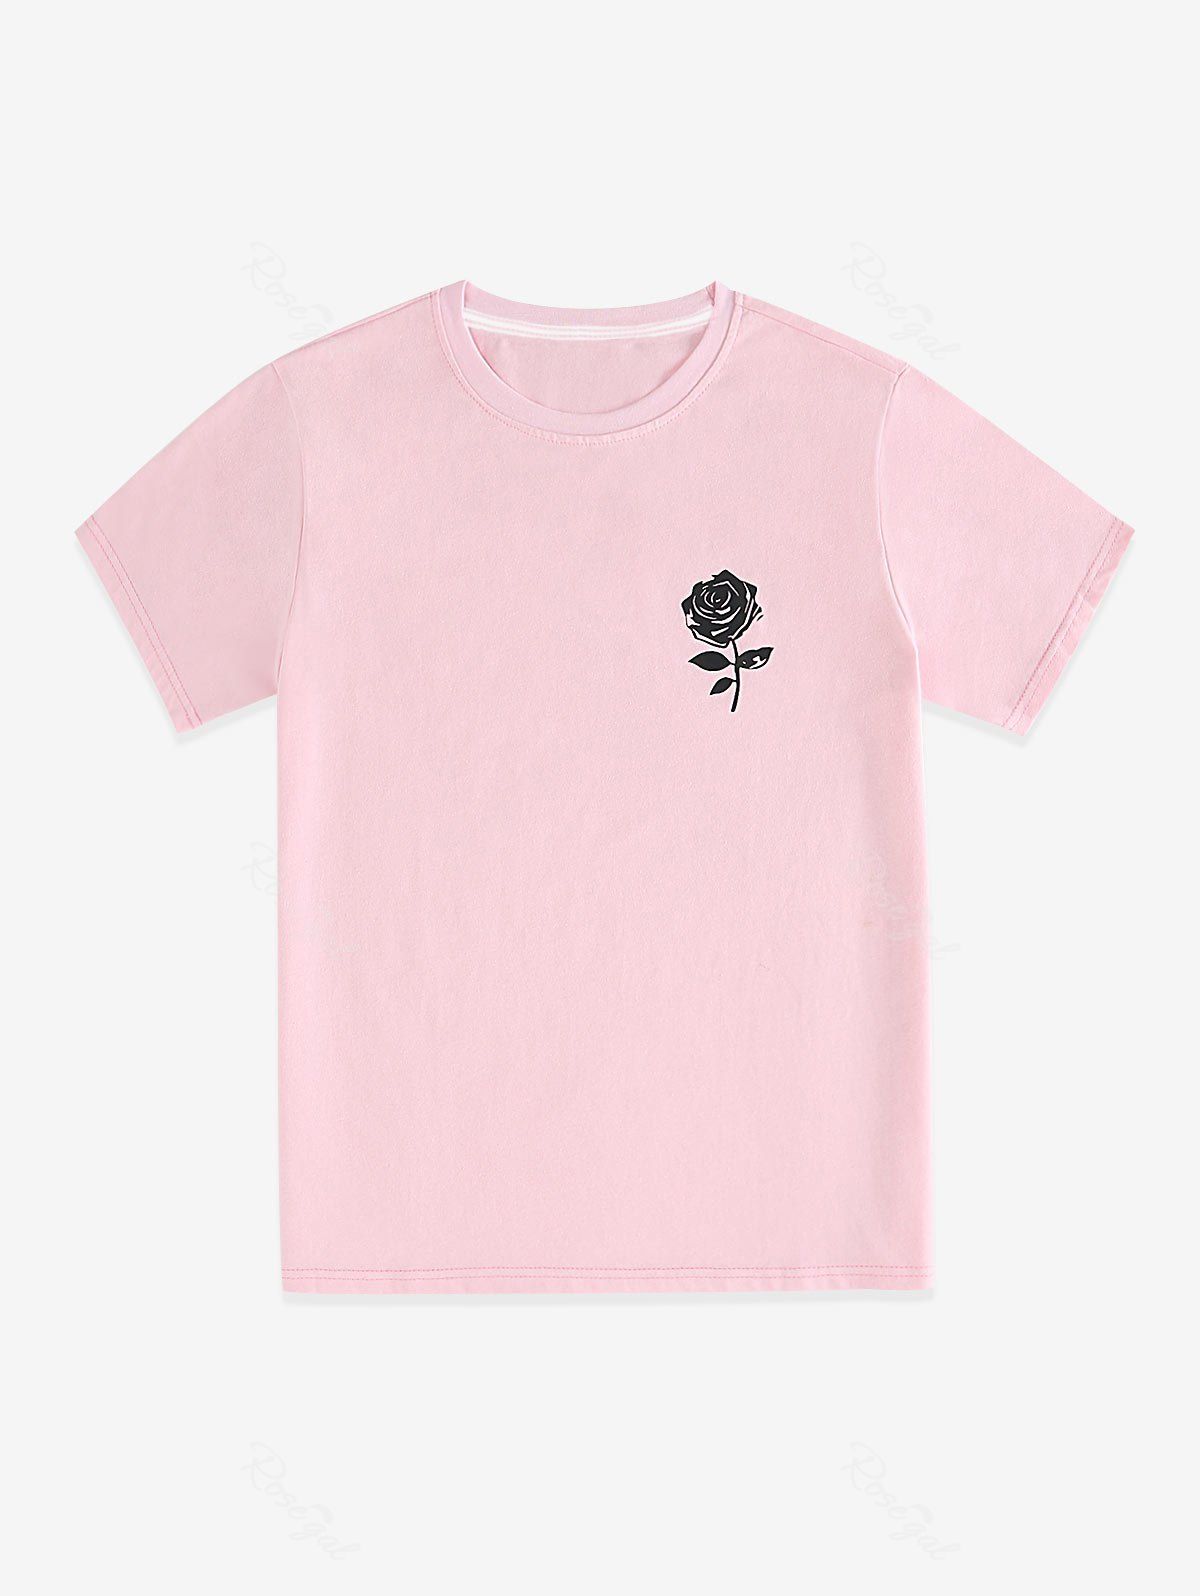 T-Shirt de Base Unisexe à Imprimé Rose de Grande Taille Rose clair 2XL